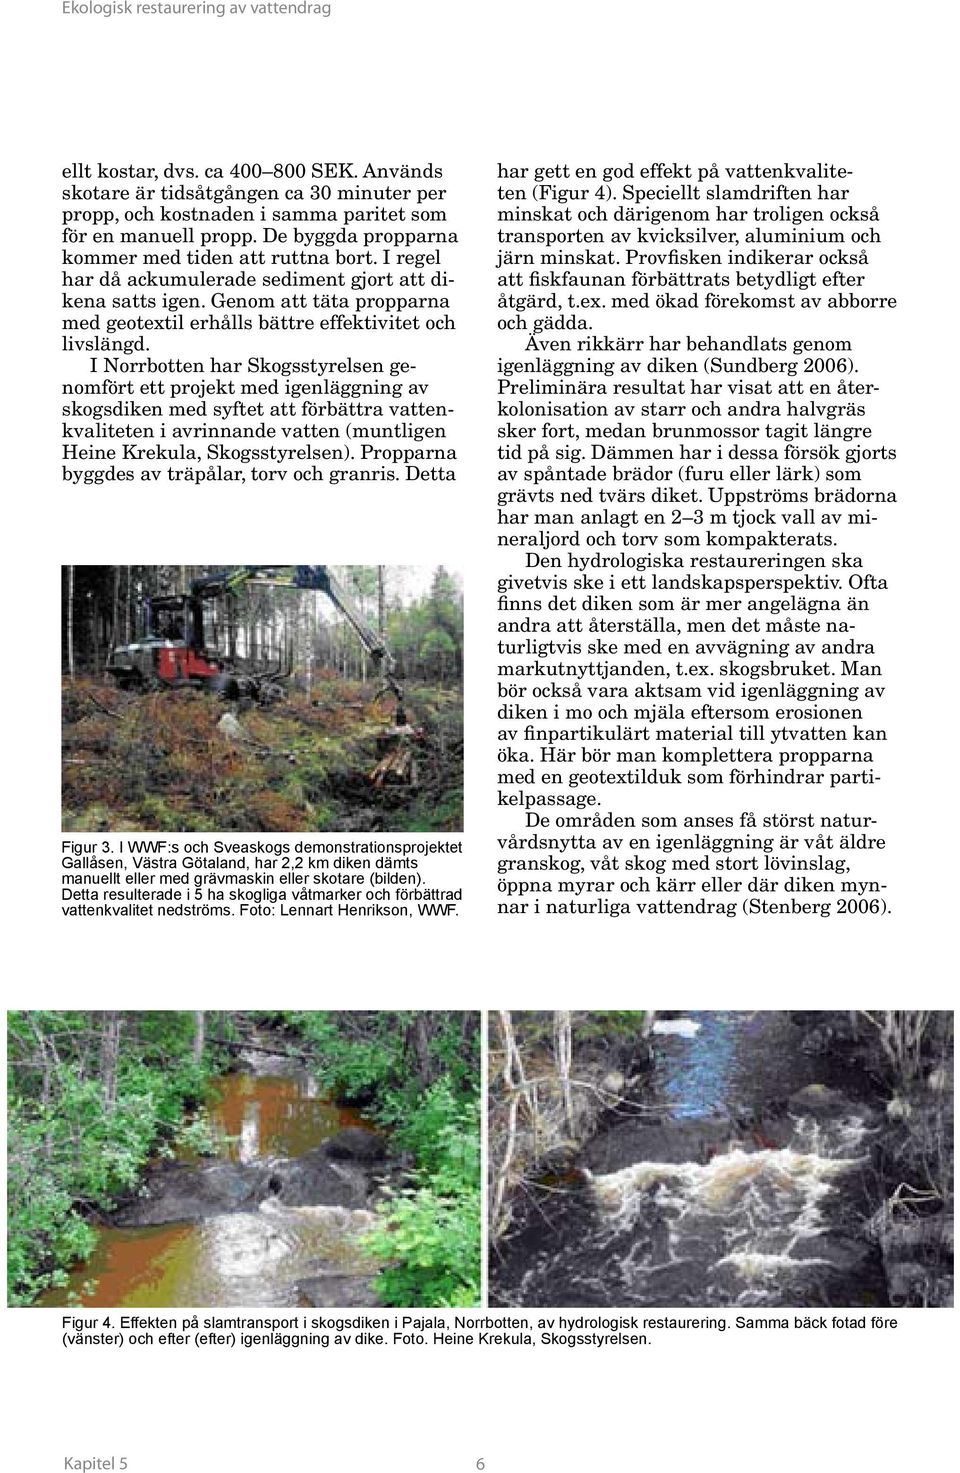 I Norrbotten har Skogsstyrelsen genomfört ett projekt med igenläggning av skogsdiken med syftet att förbättra vattenkvaliteten i avrinnande vatten (muntligen Heine Krekula, Skogsstyrelsen).